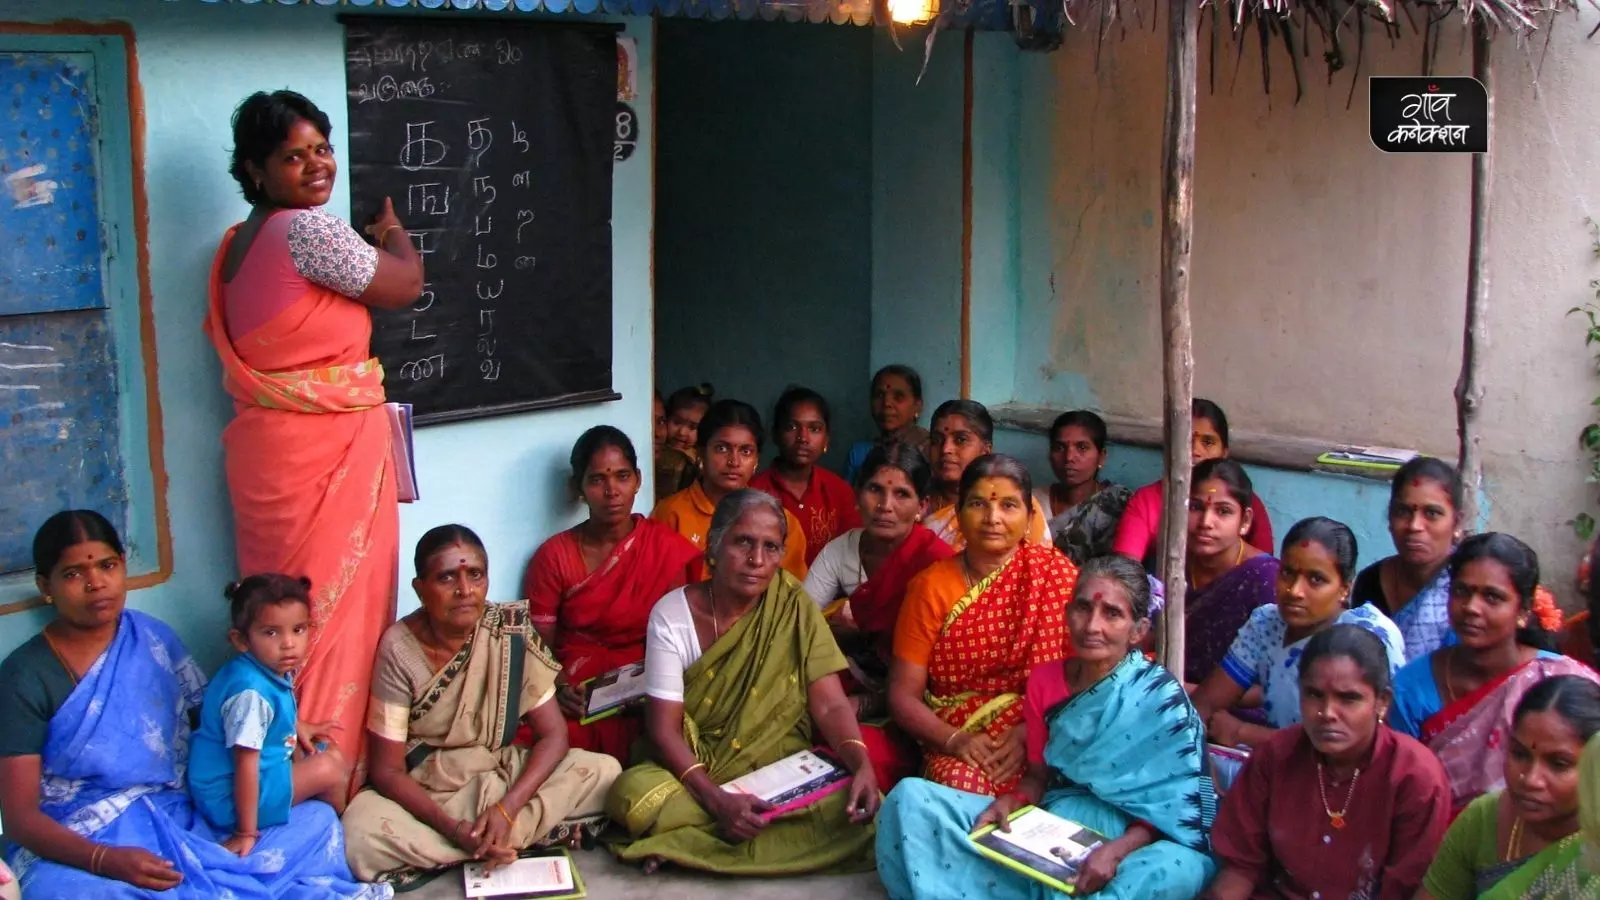 नव भारत साक्षरता कार्यक्रम: अब प्रौढ़ शिक्षा नहीं सभी के लिए शिक्षा, सरकार ने शुरू किया नया कार्यक्रम